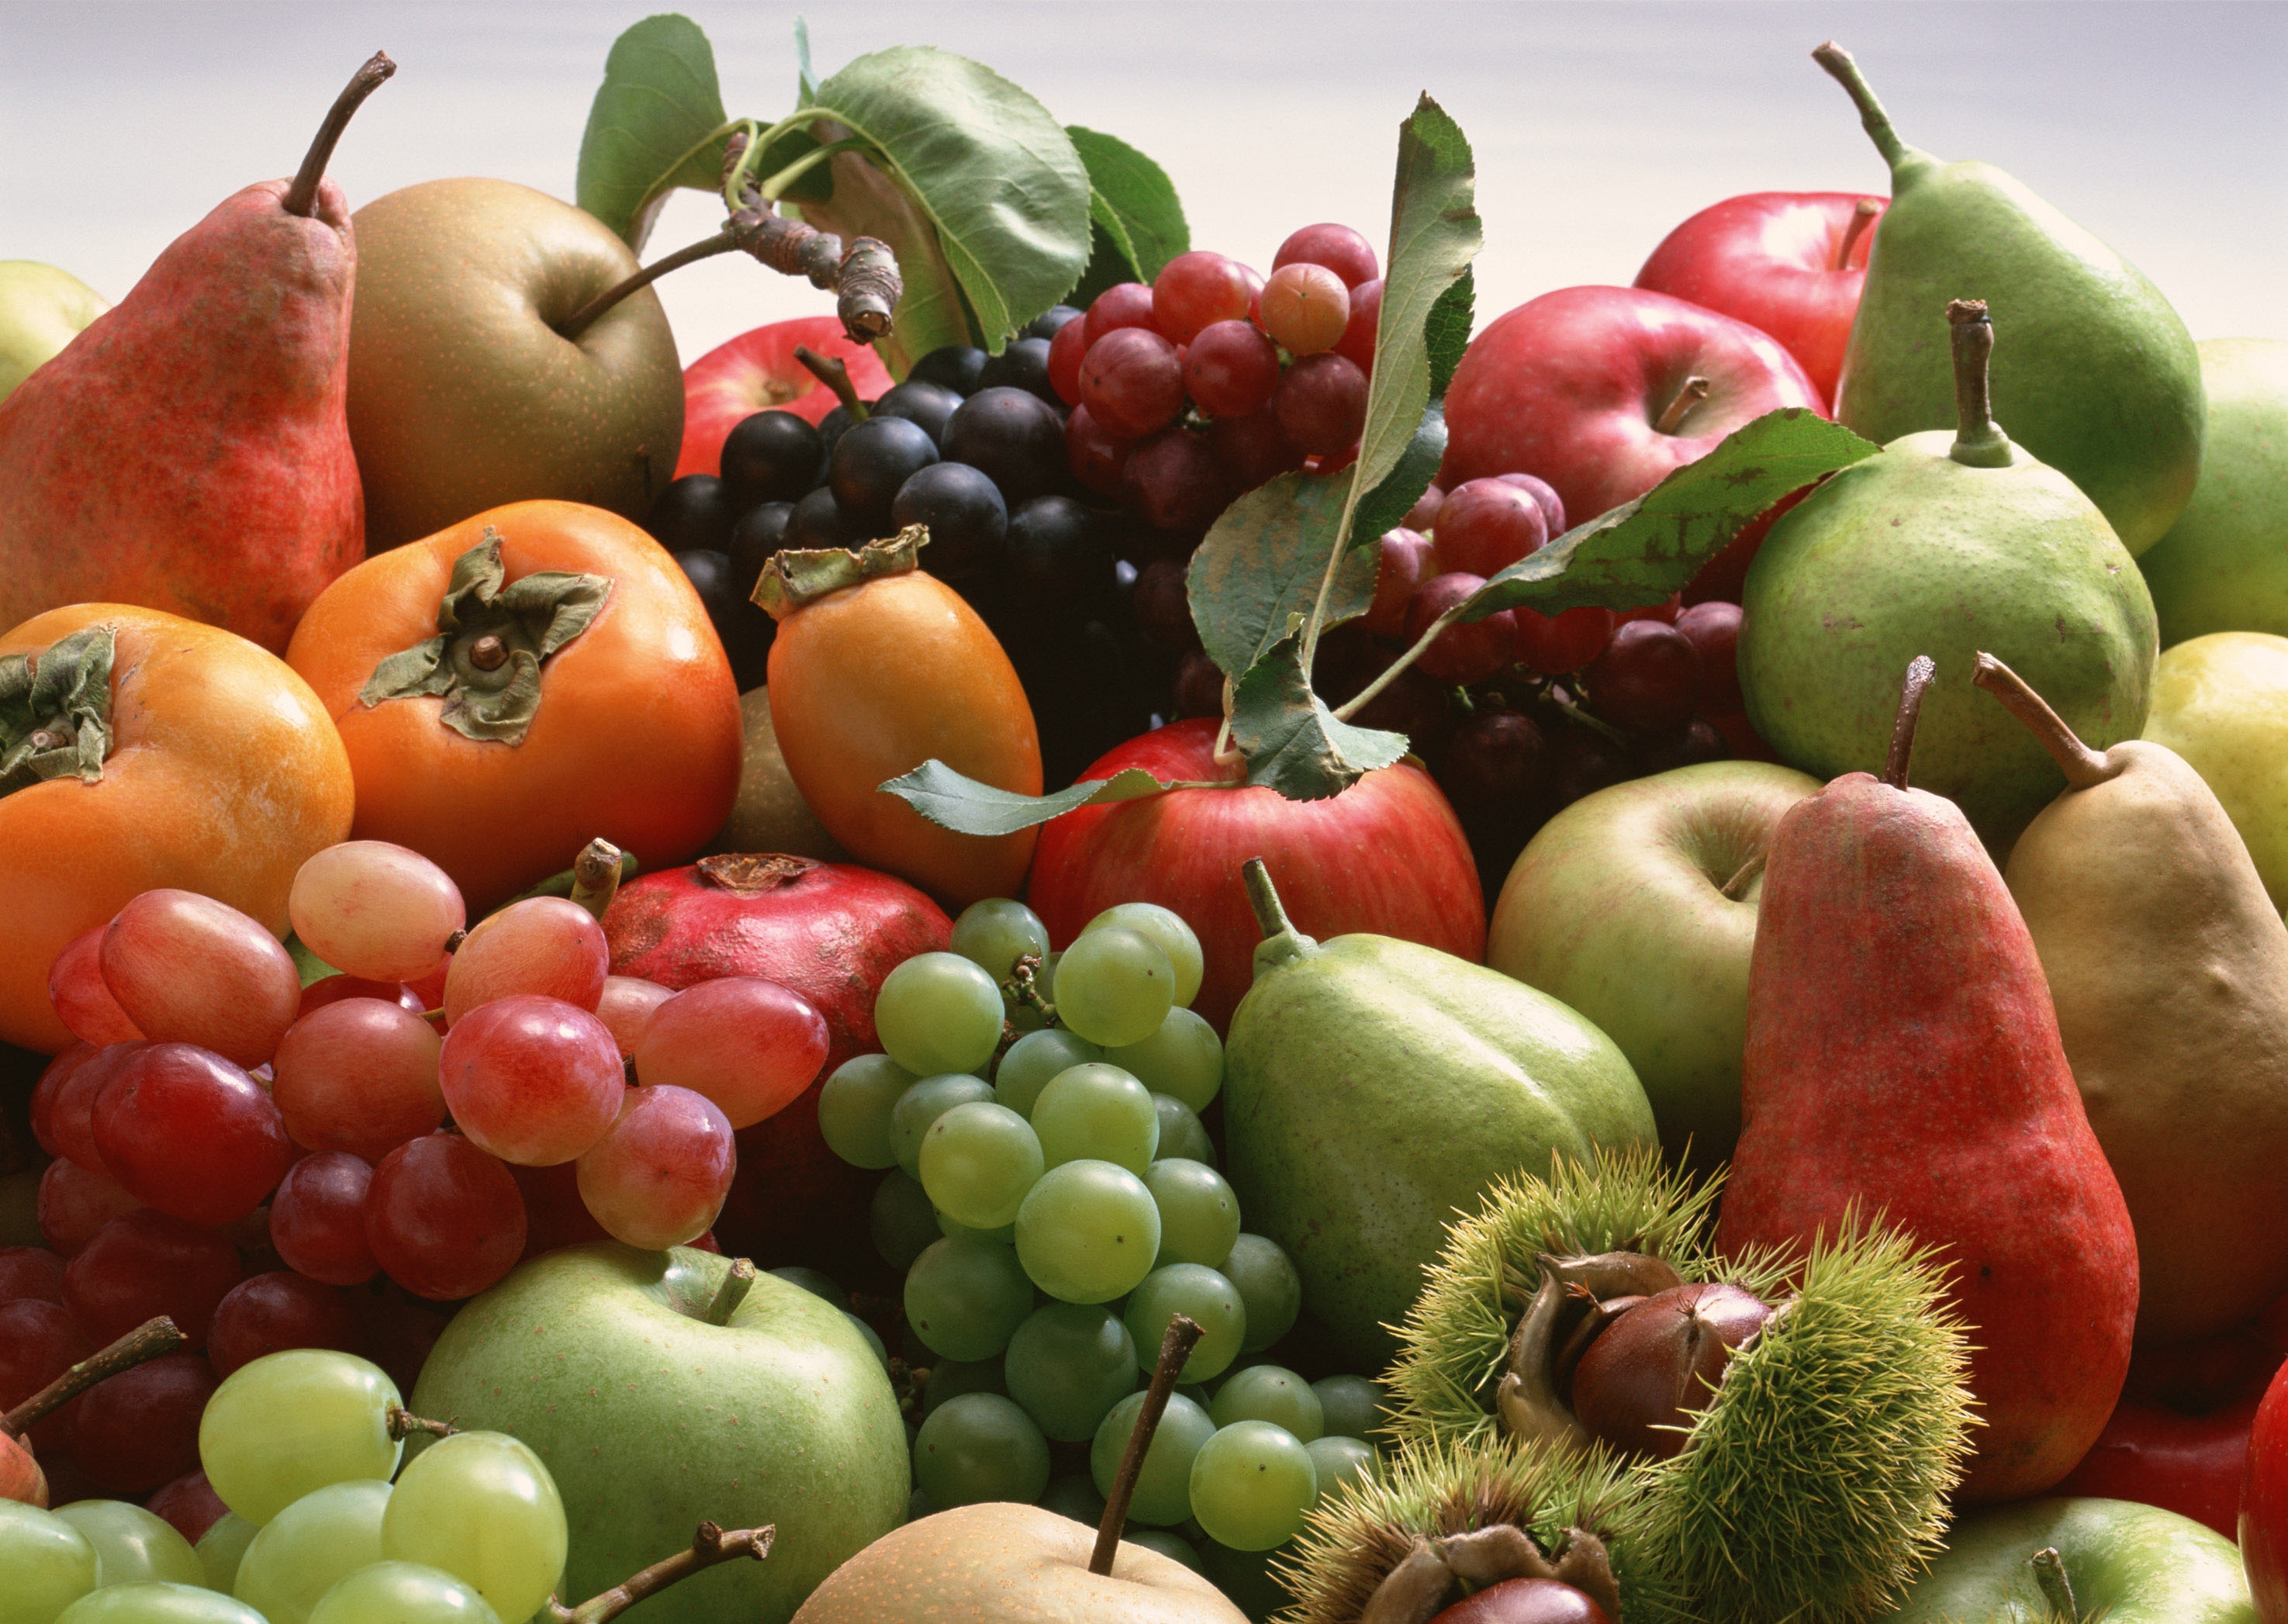 Яблоко фрукт или овощ. Фрукты. Овощи, фрукты, ягоды. Урожай фруктов. Осенние овощи и фрукты.